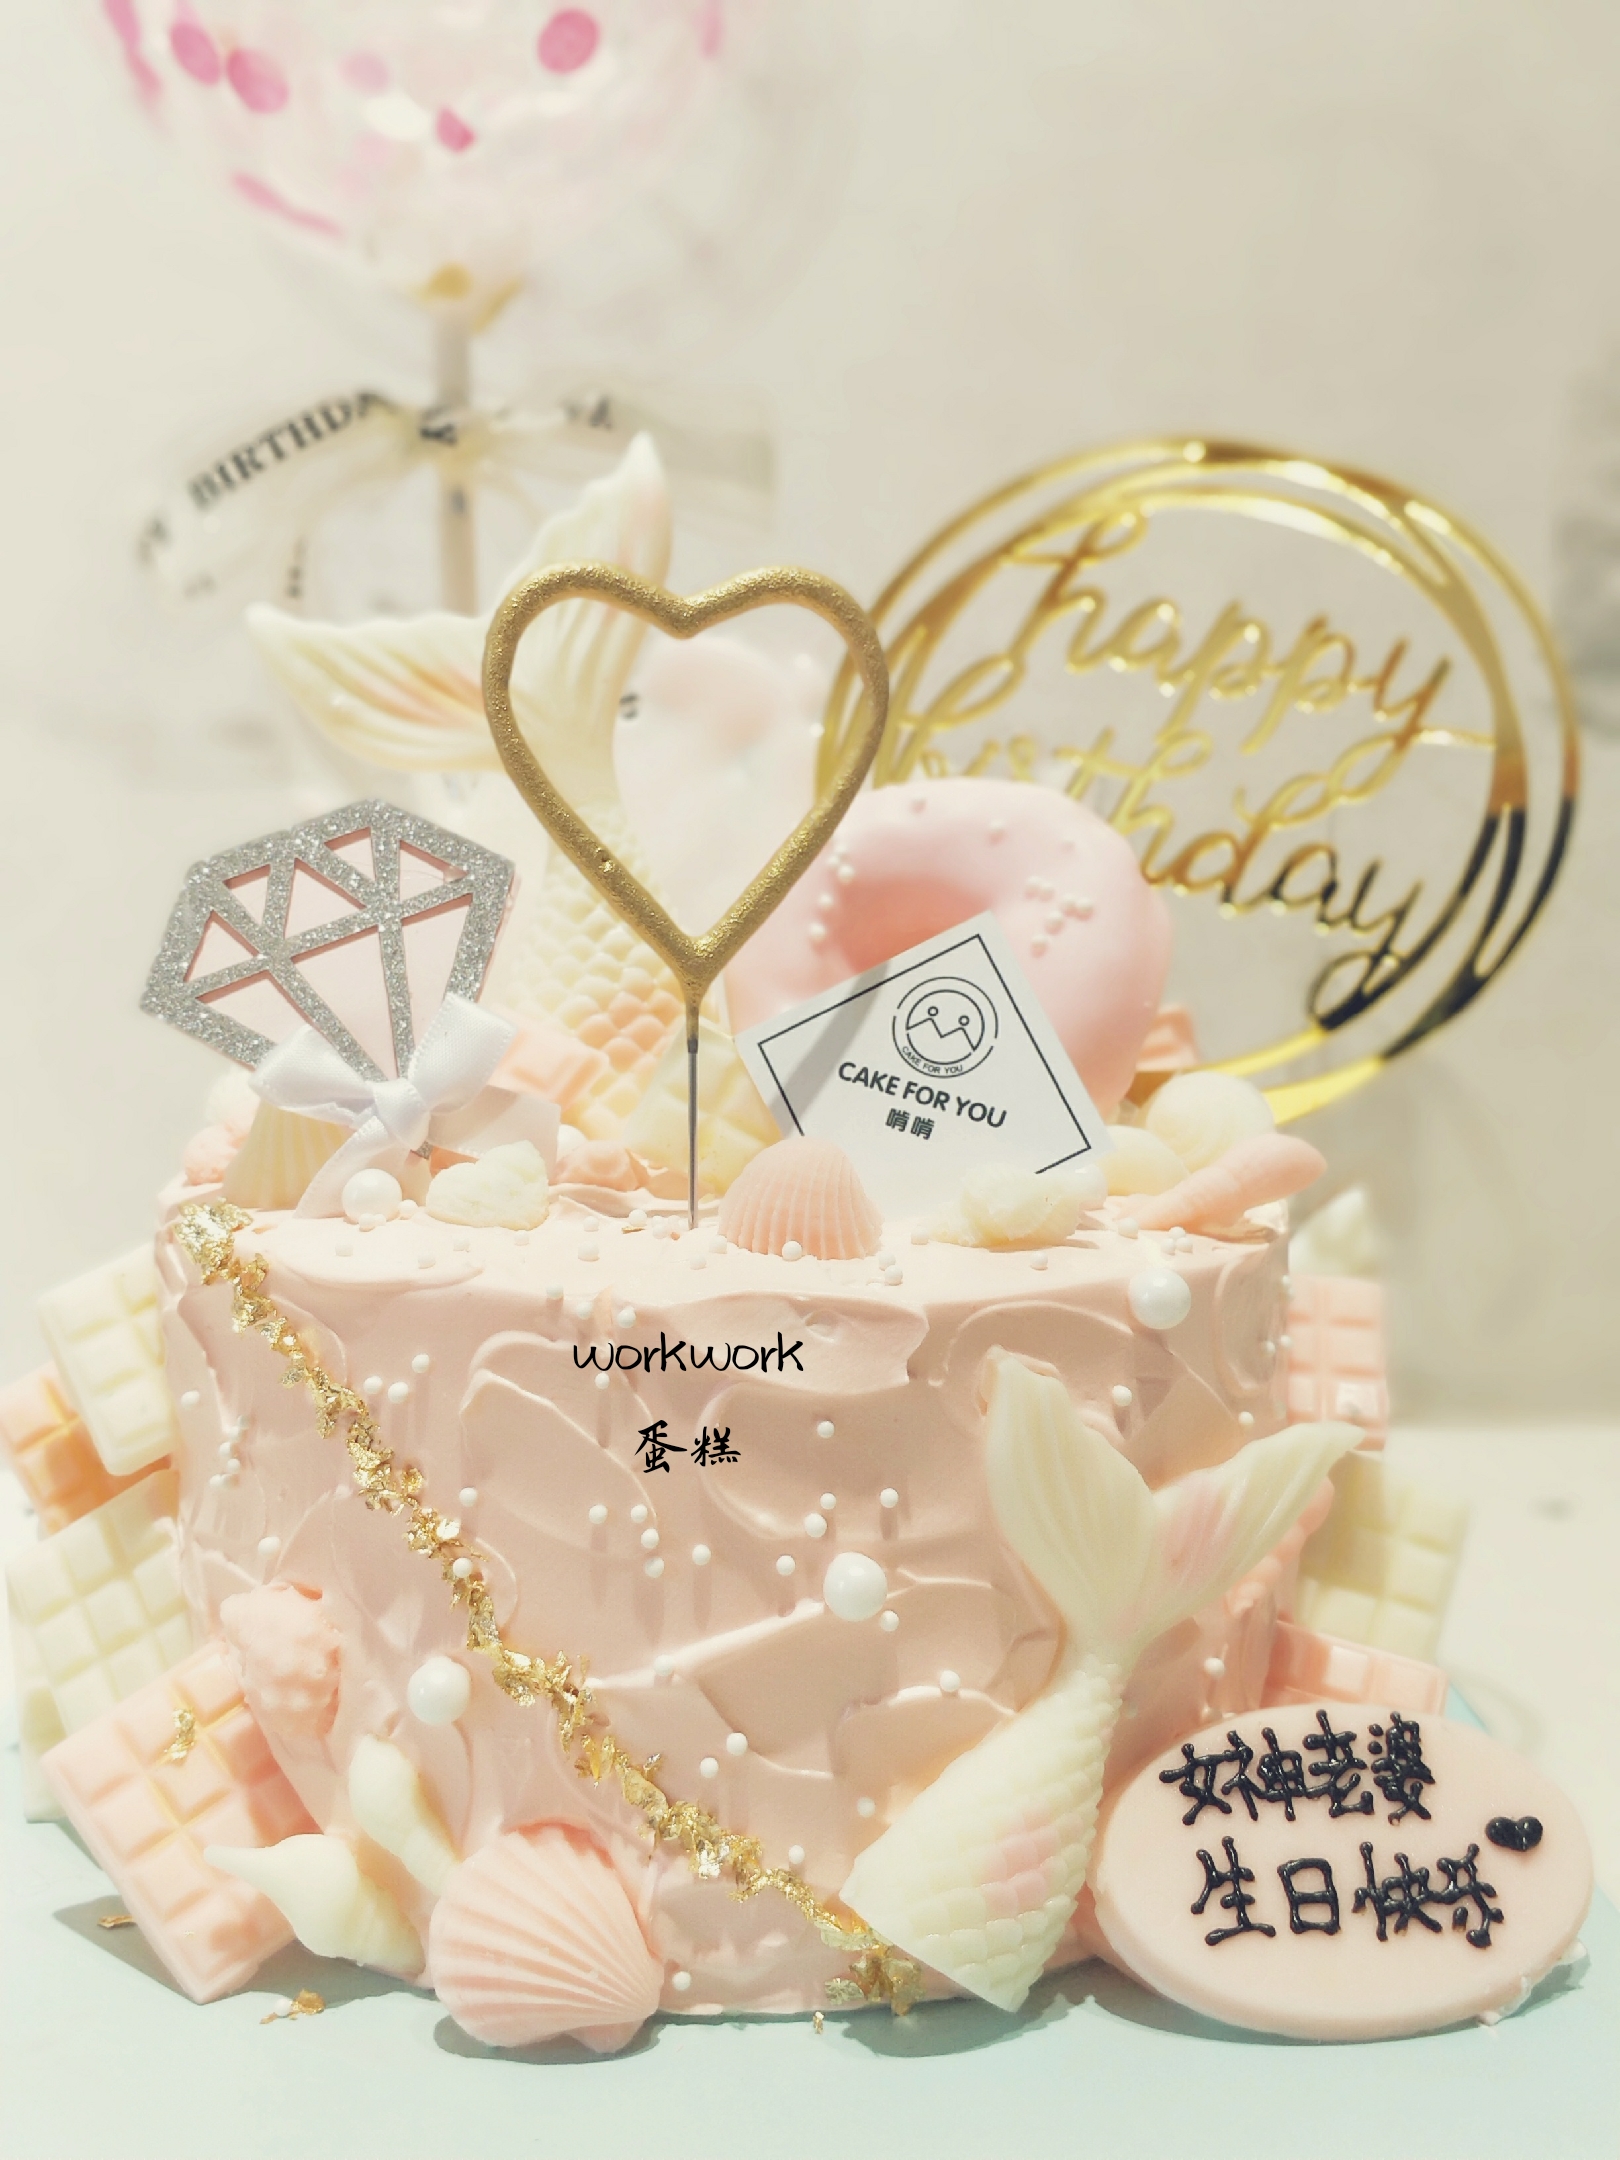 共181 件生日蛋糕粉色系相关商品